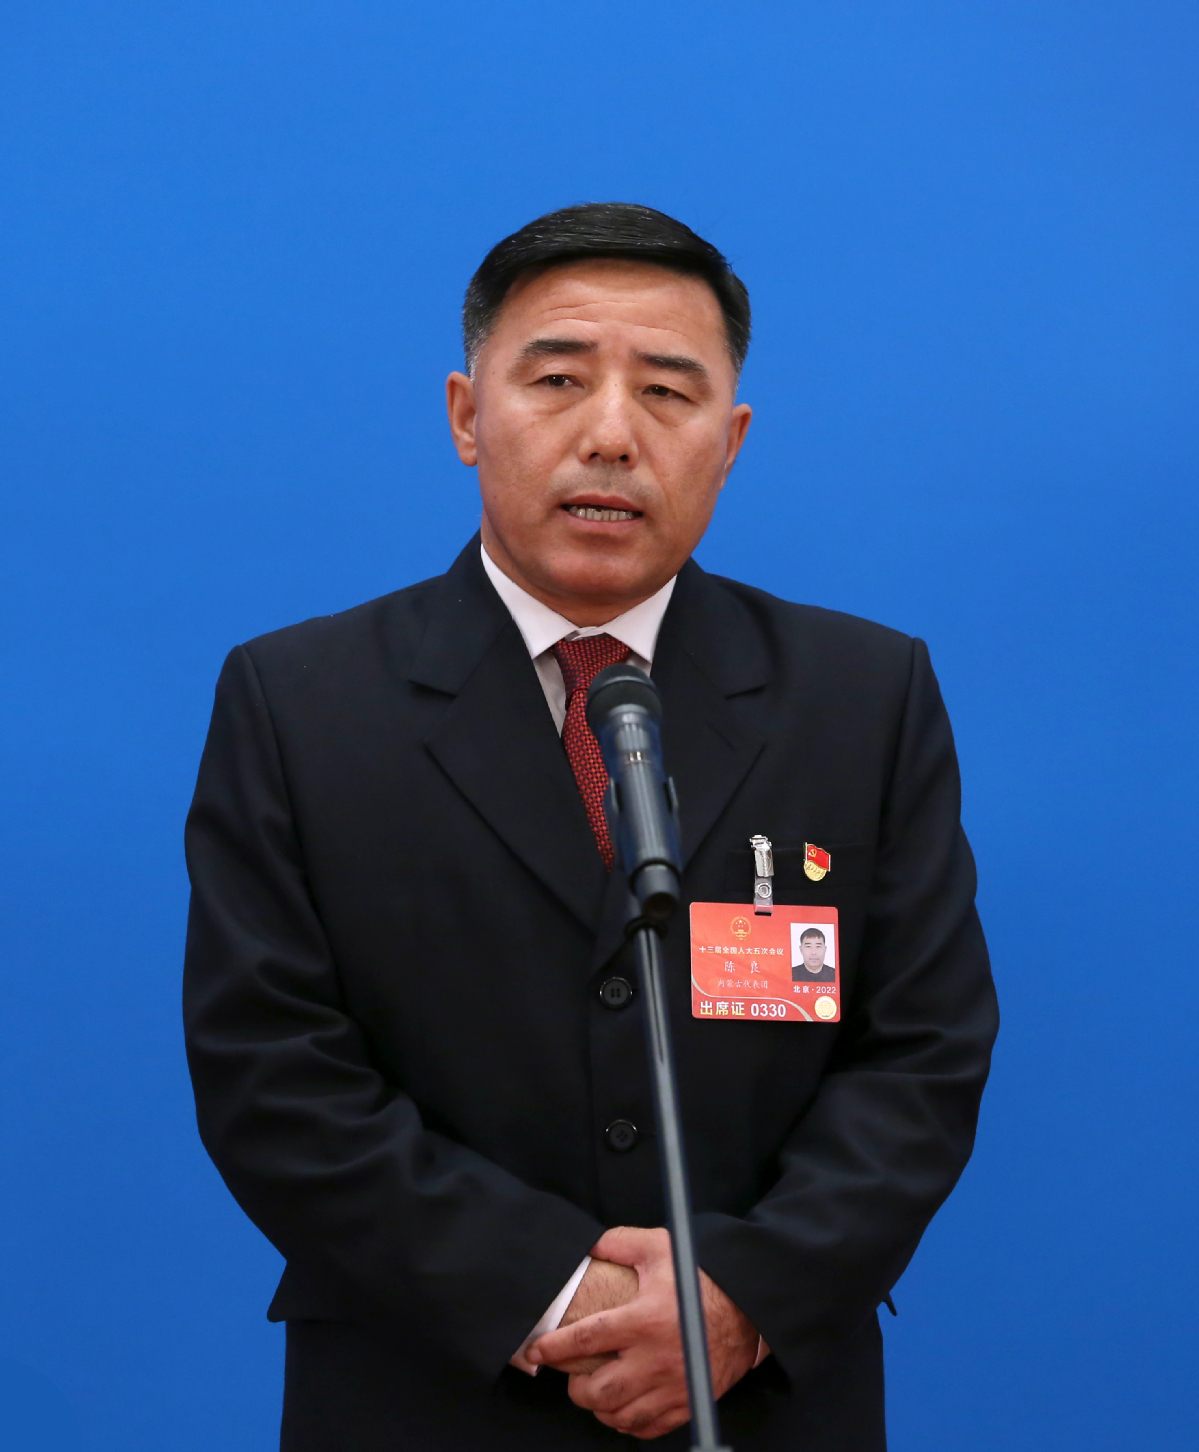 全国人大代表陈良通过网络视频方式接受采访。中国日报记者 王敬 摄